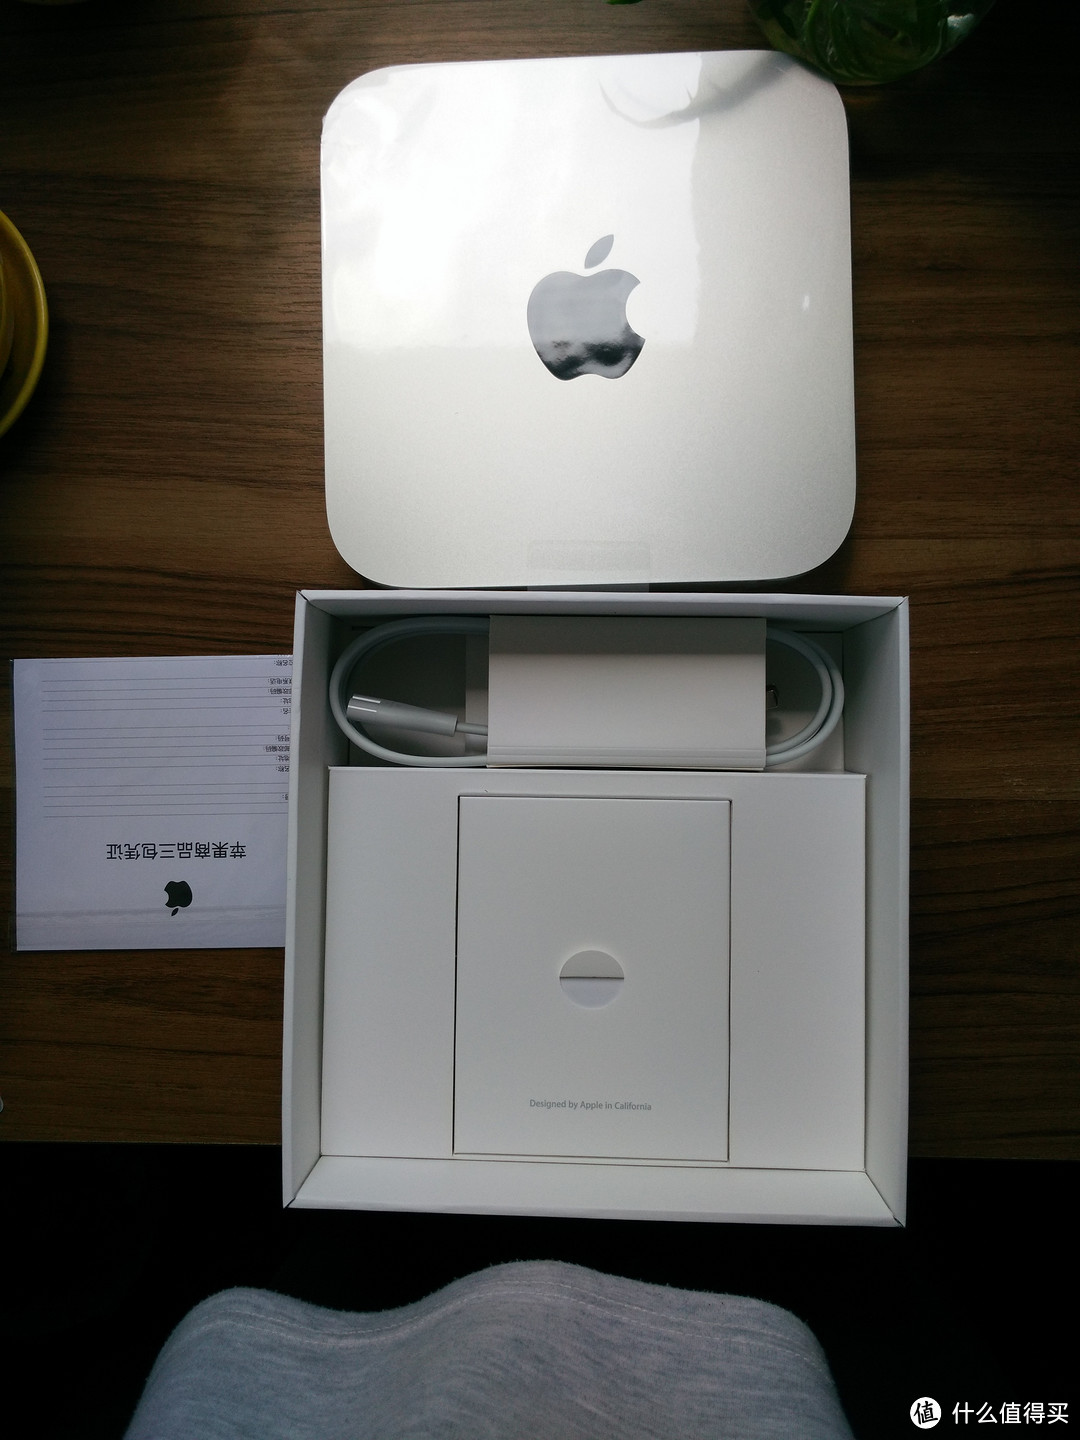 #双11晒战绩# 我的小苹果：Apple 苹果 Mac mini 开箱